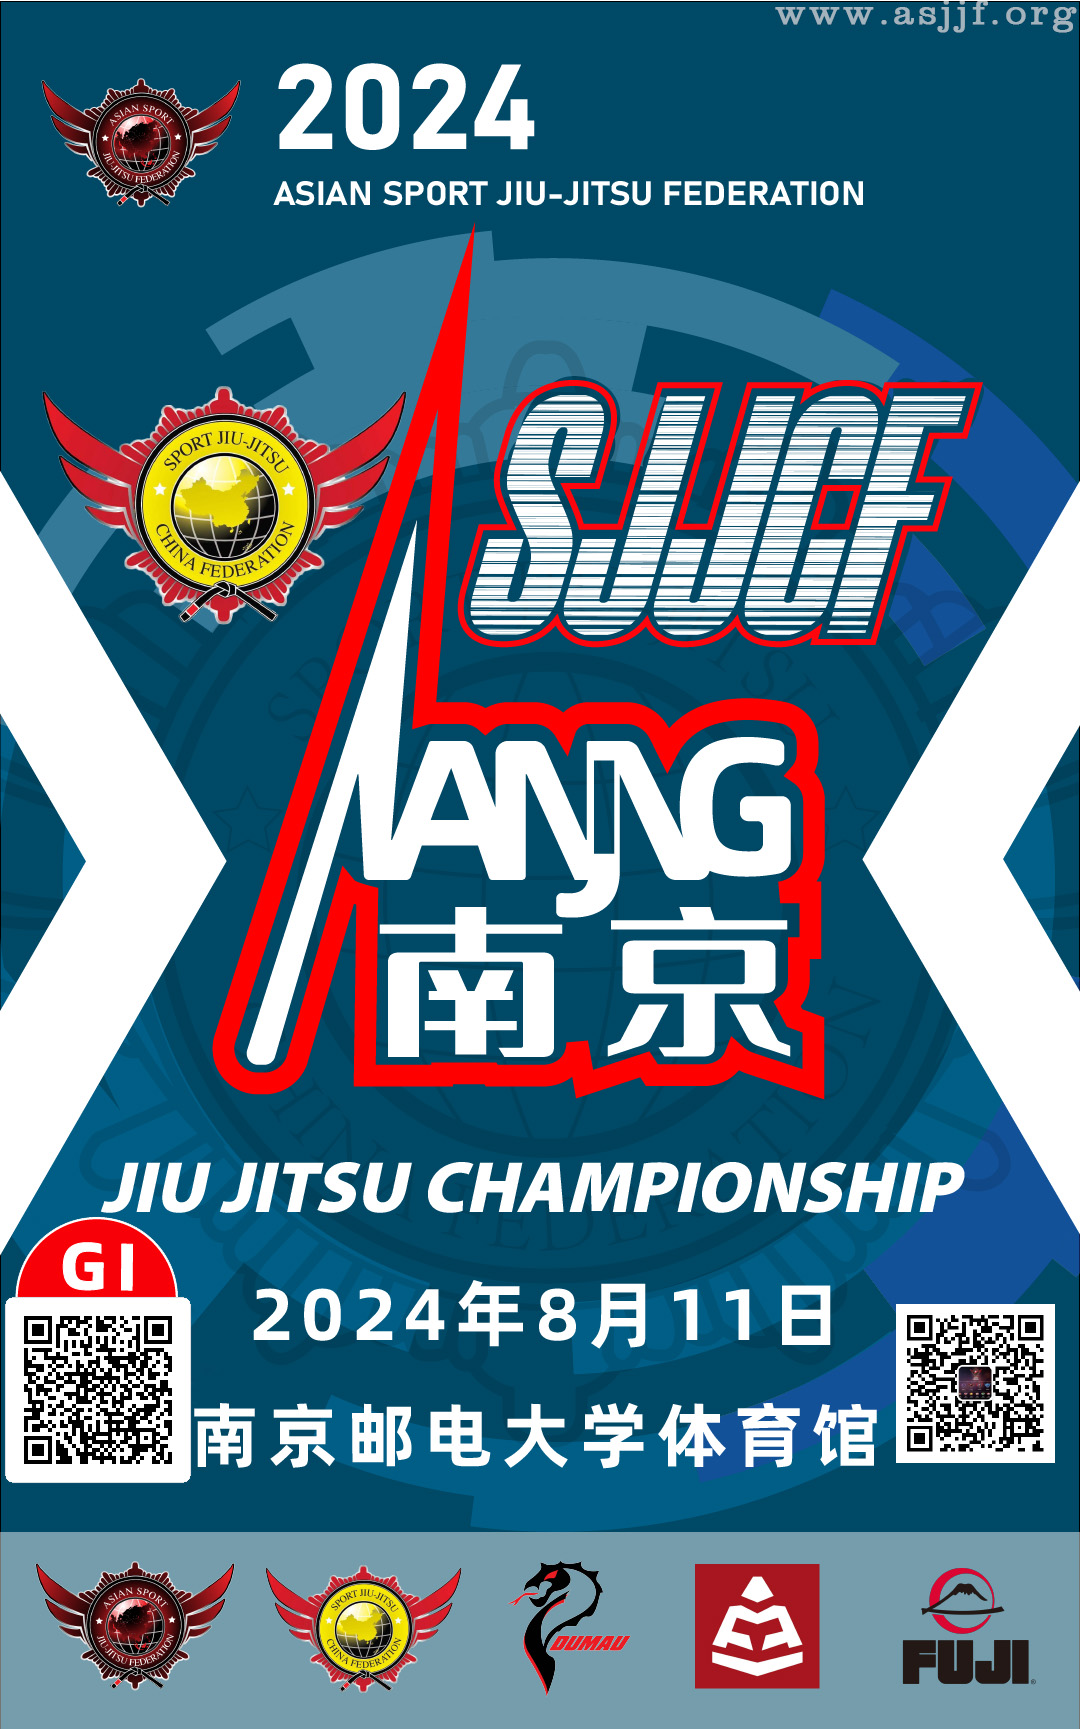 sjjcf nanjing jiu jitsu championship 2024